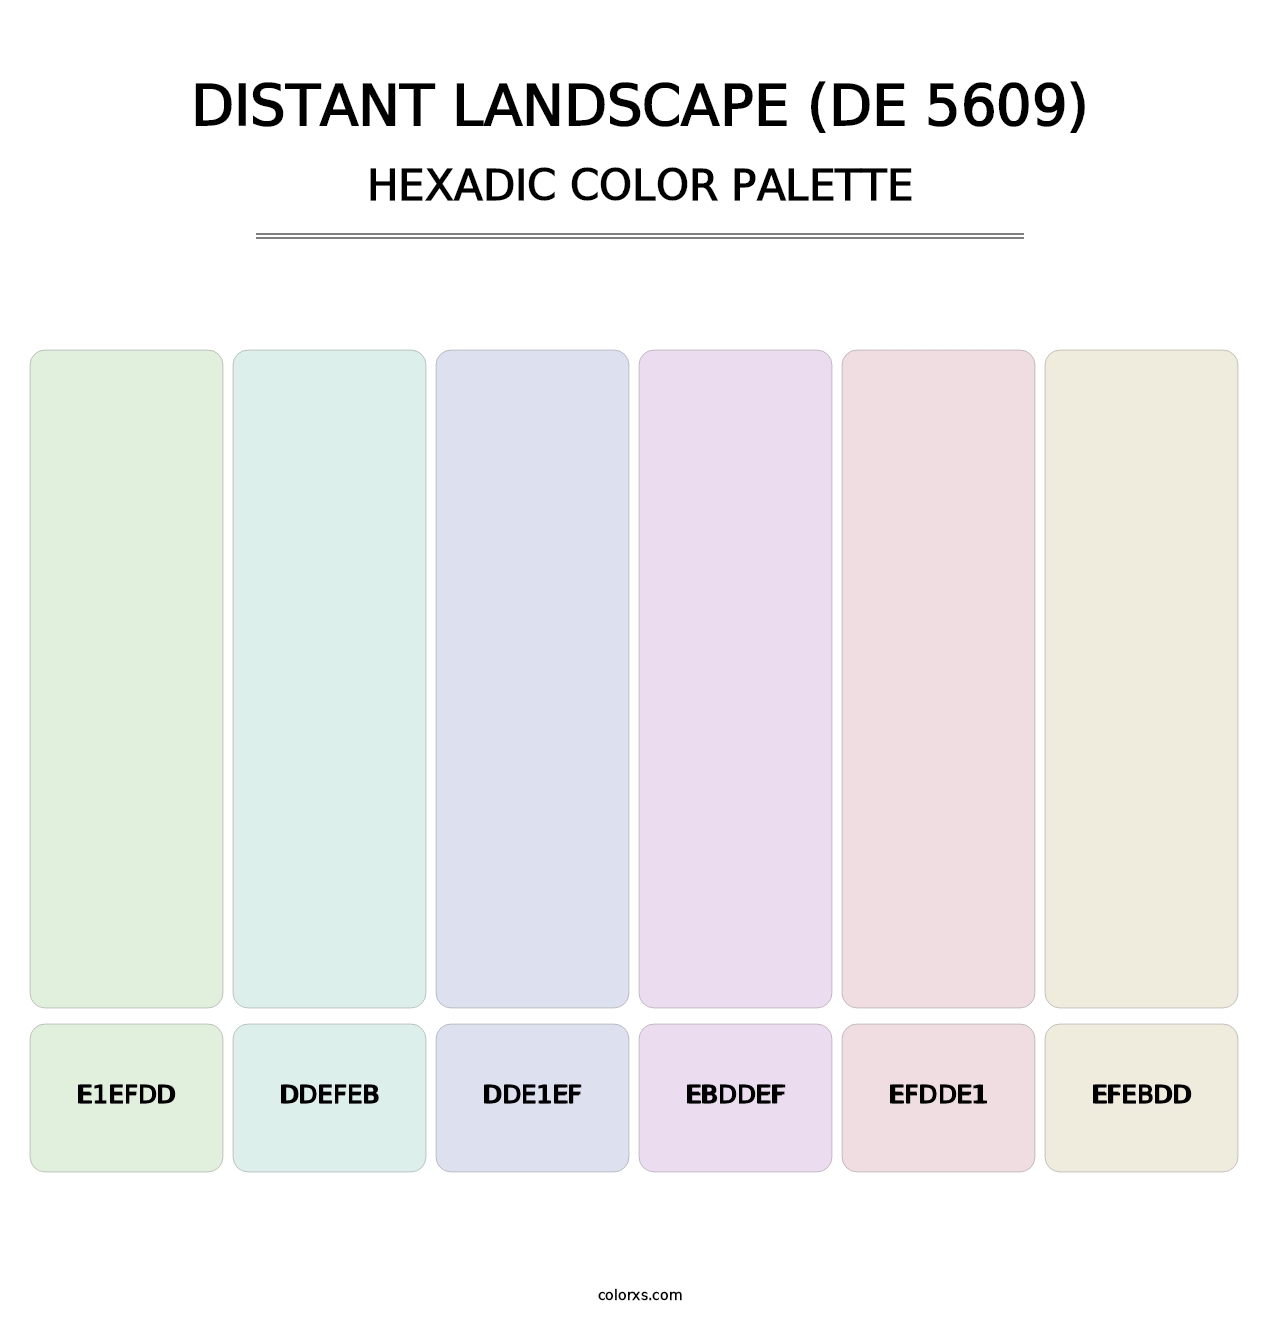 Distant Landscape (DE 5609) - Hexadic Color Palette